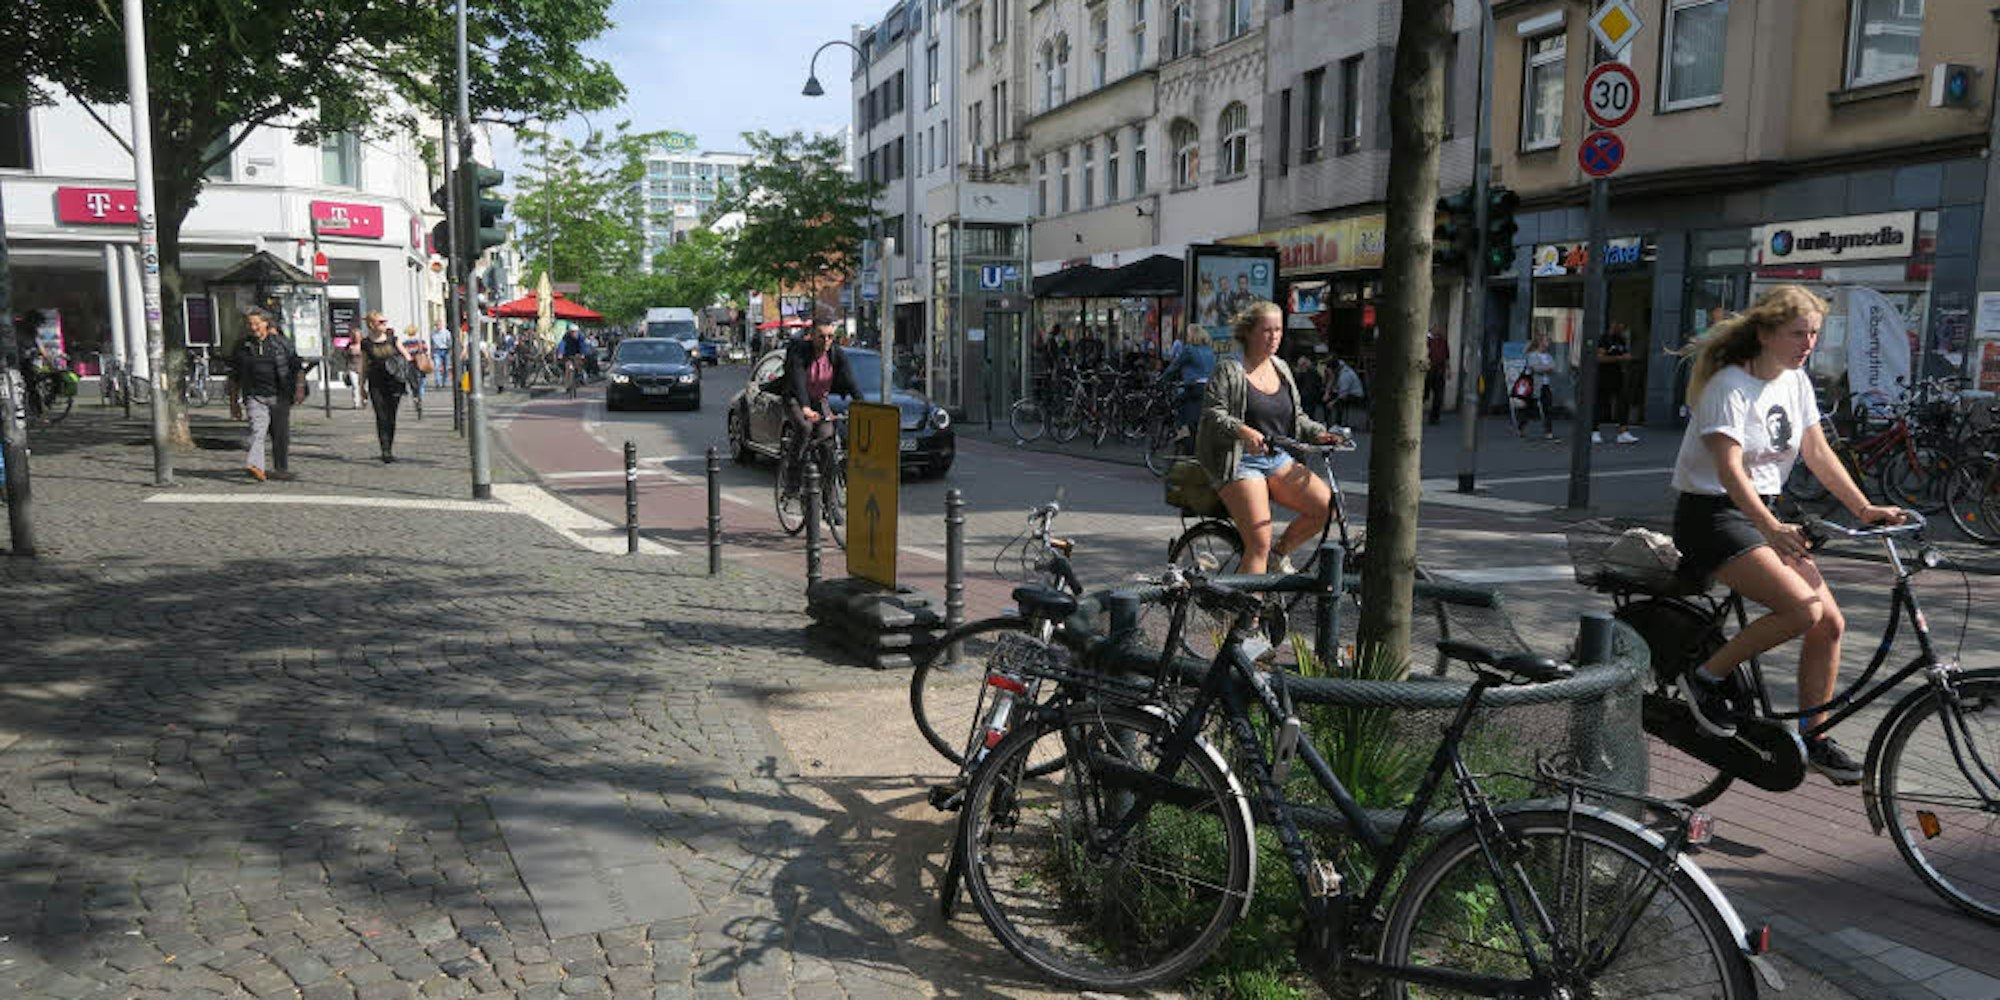 Eng geht es zu auf der Venloer Straße. Mit einer Einbahnstraßenregelung könnte die Situation entzerrt werden.